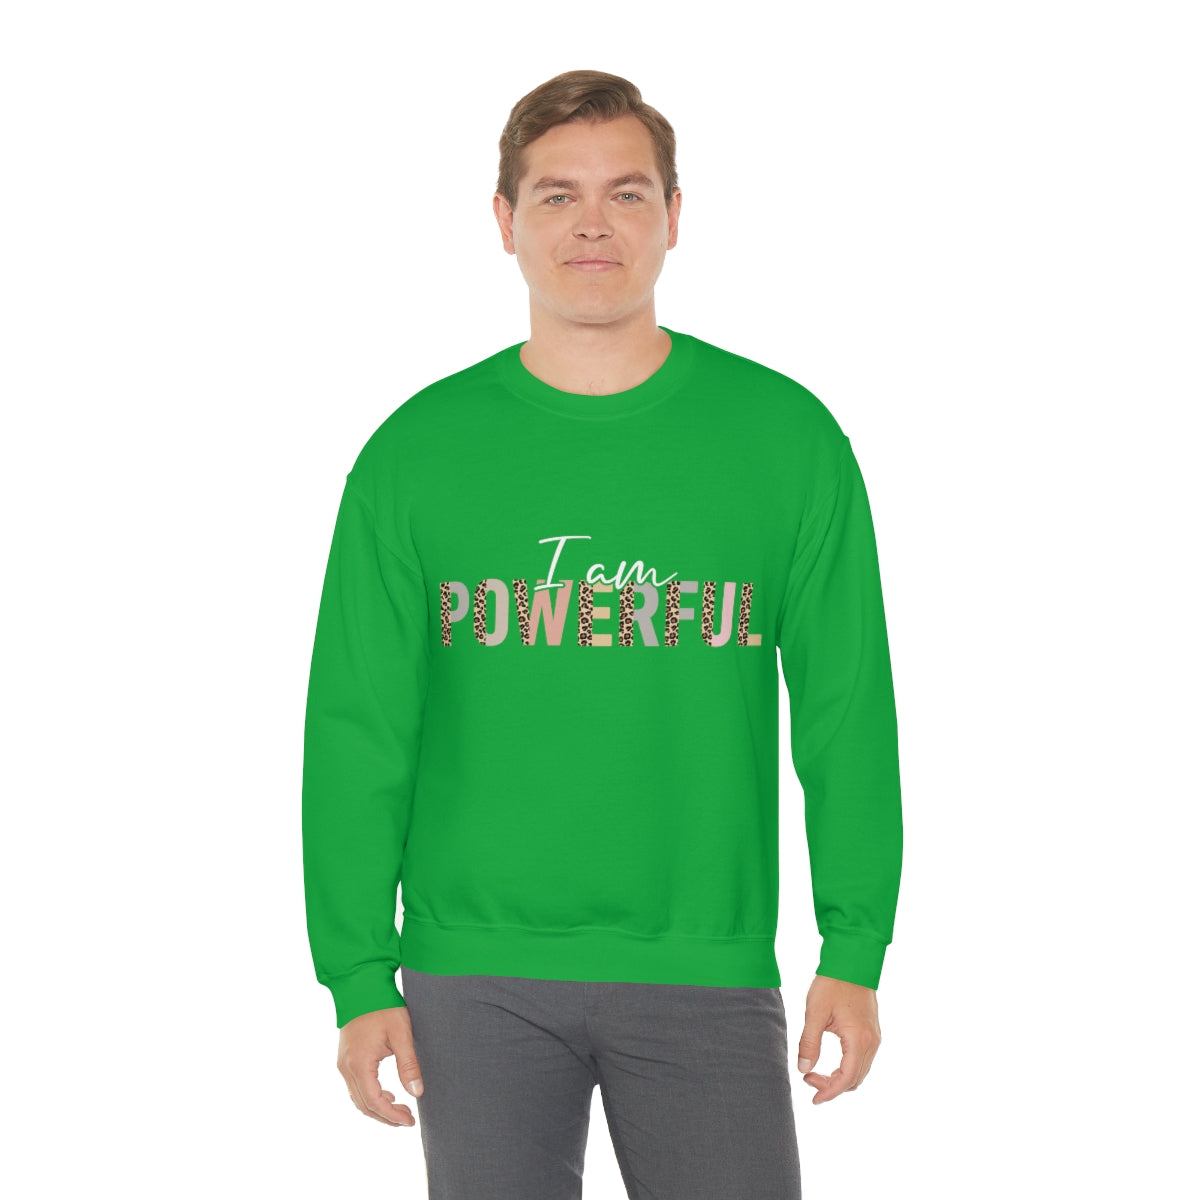 Affirmation Feminist Pro Choice Sweatshirt Unisex  Size – I Am Powerful Printify